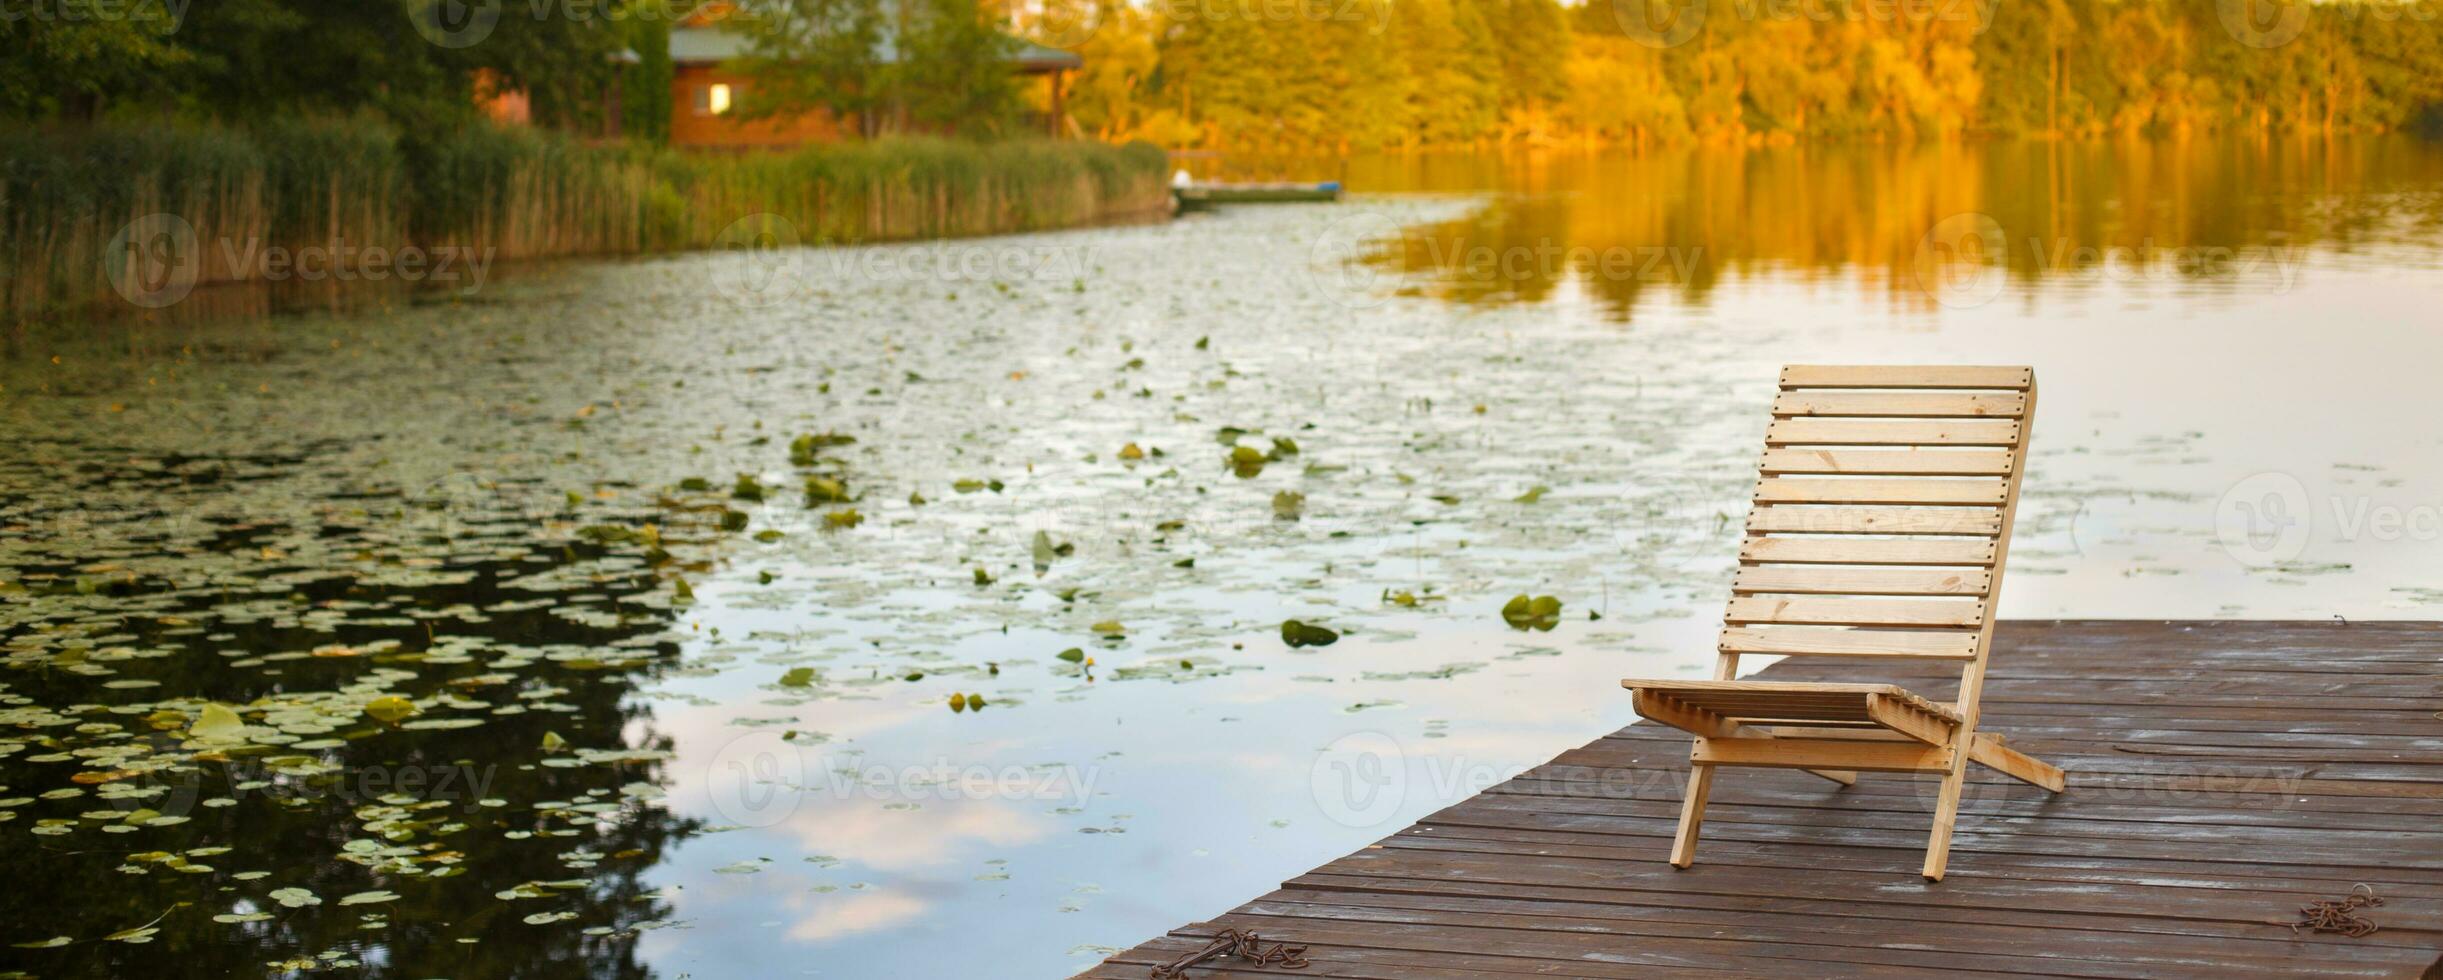 Holzsteg mit Liegestuhl am Steg am ruhigen See mitten im Wald foto